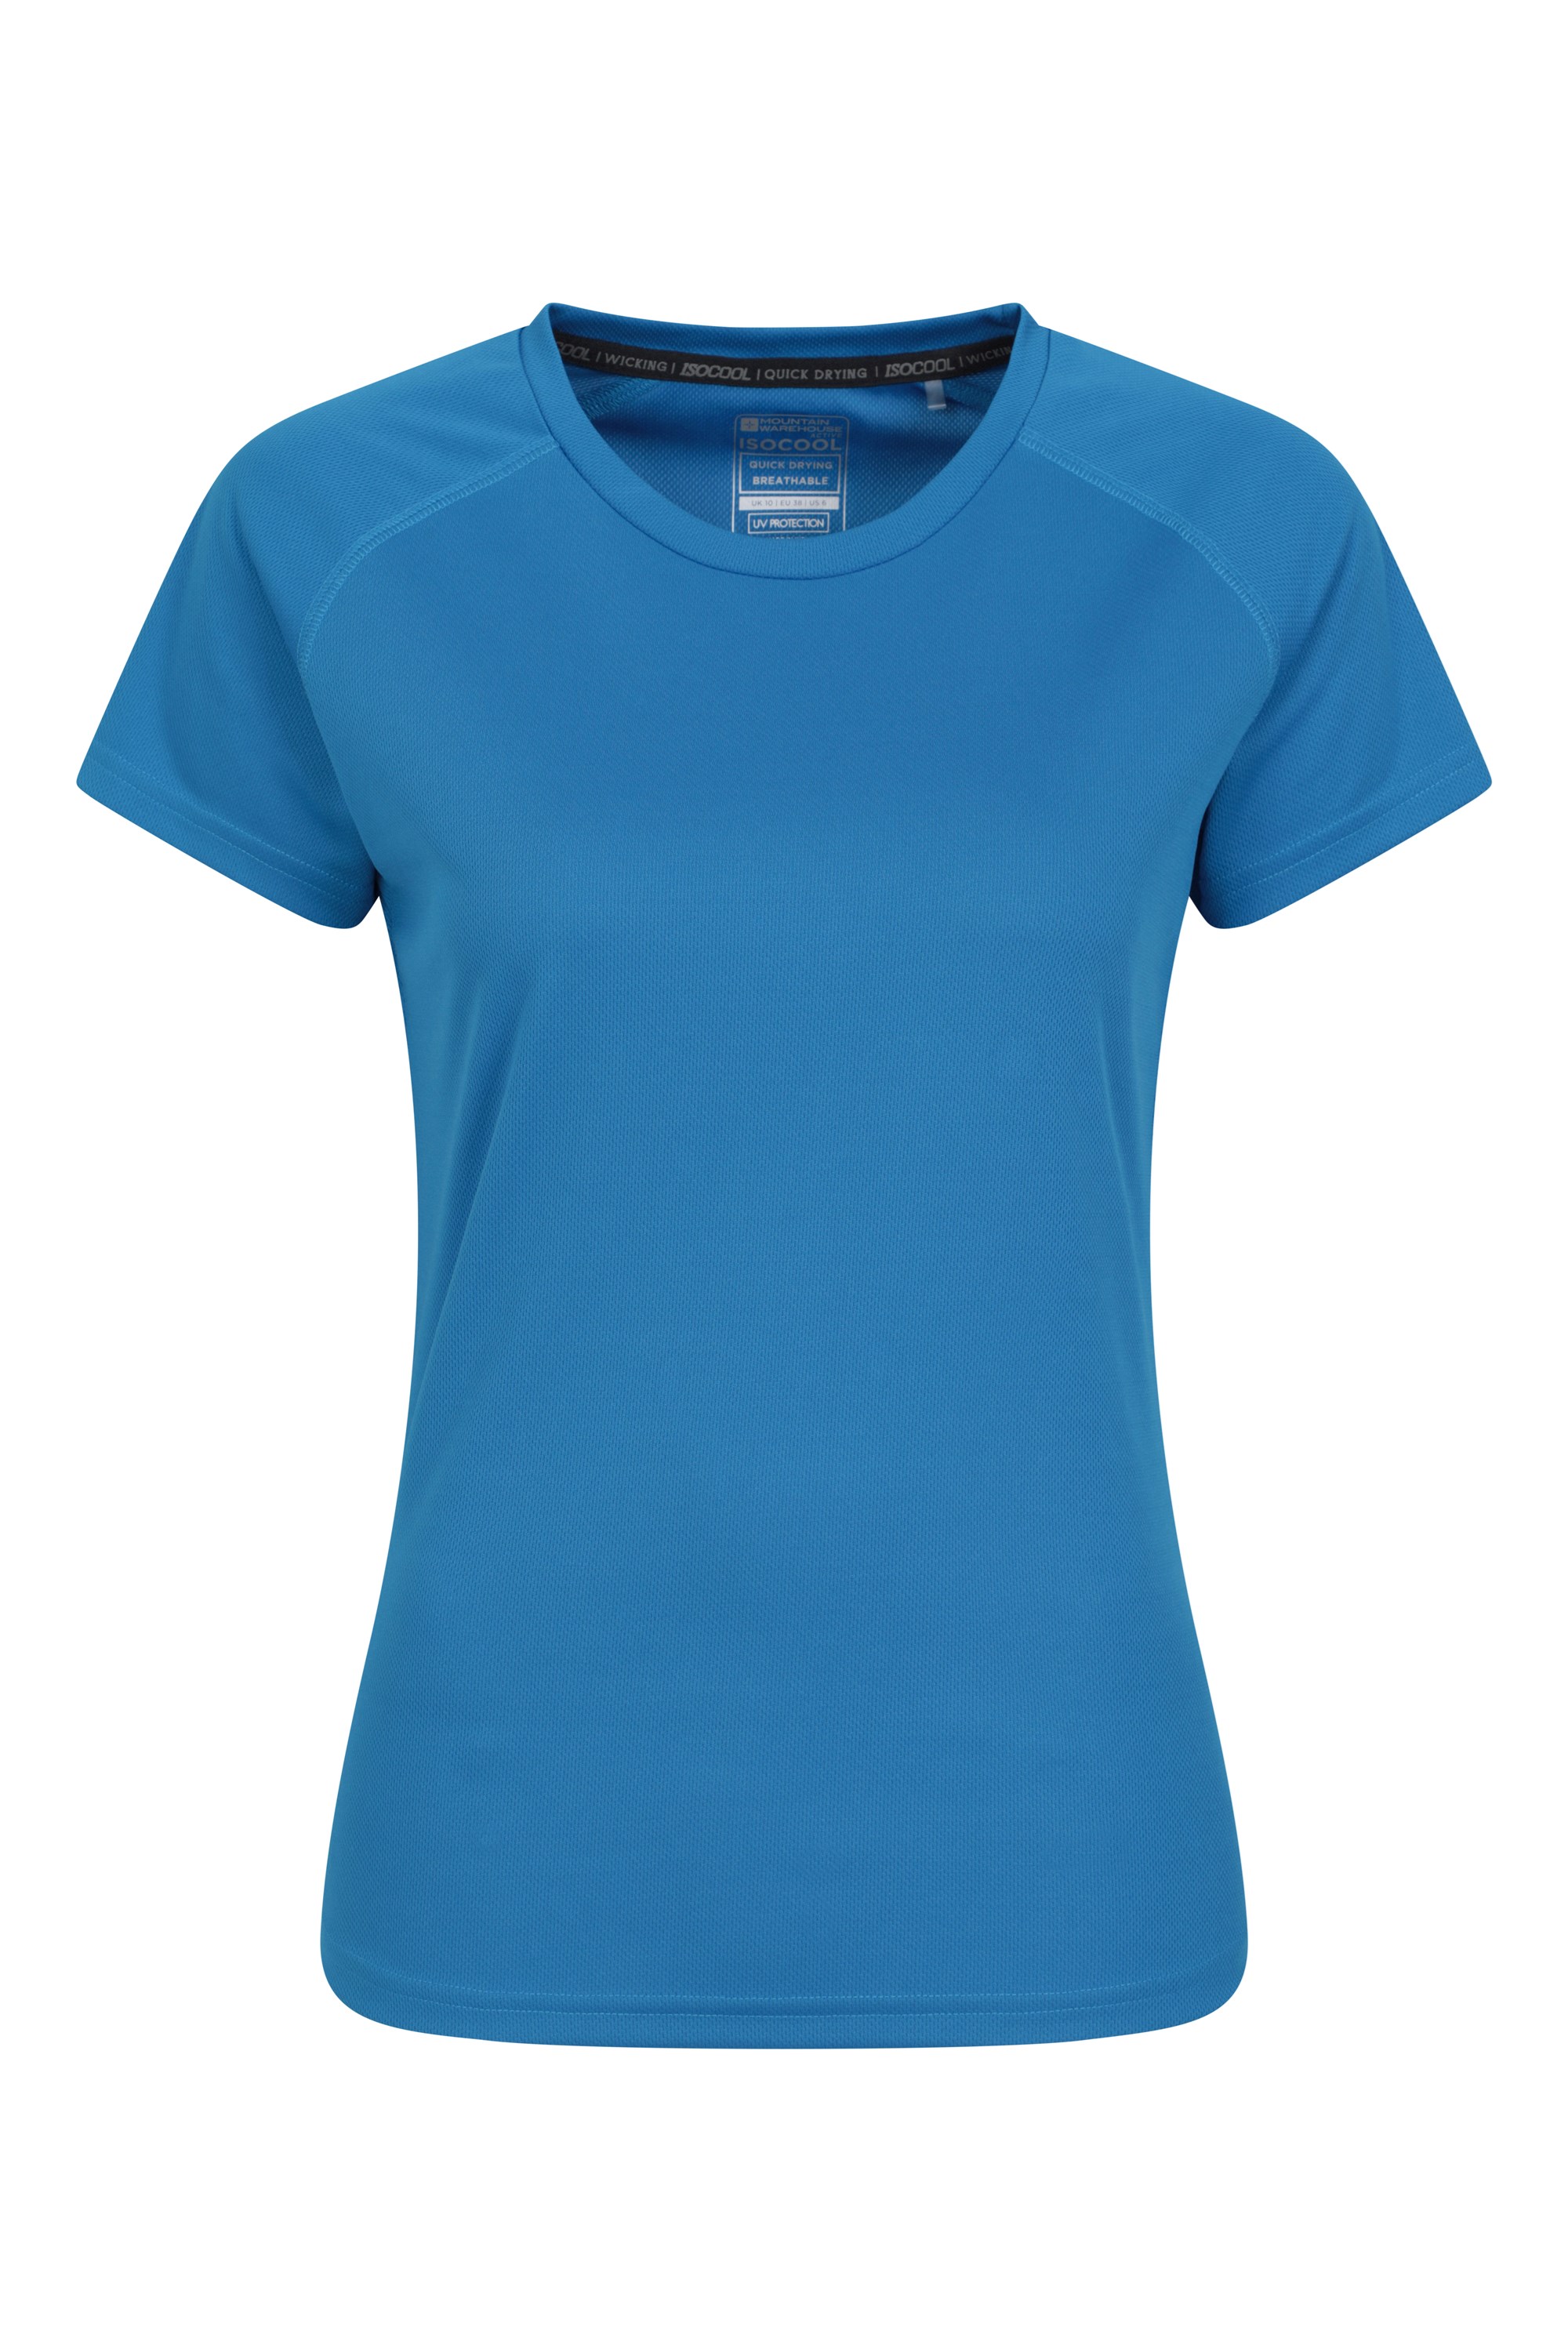 Endurance Womens T-Shirt - Blue